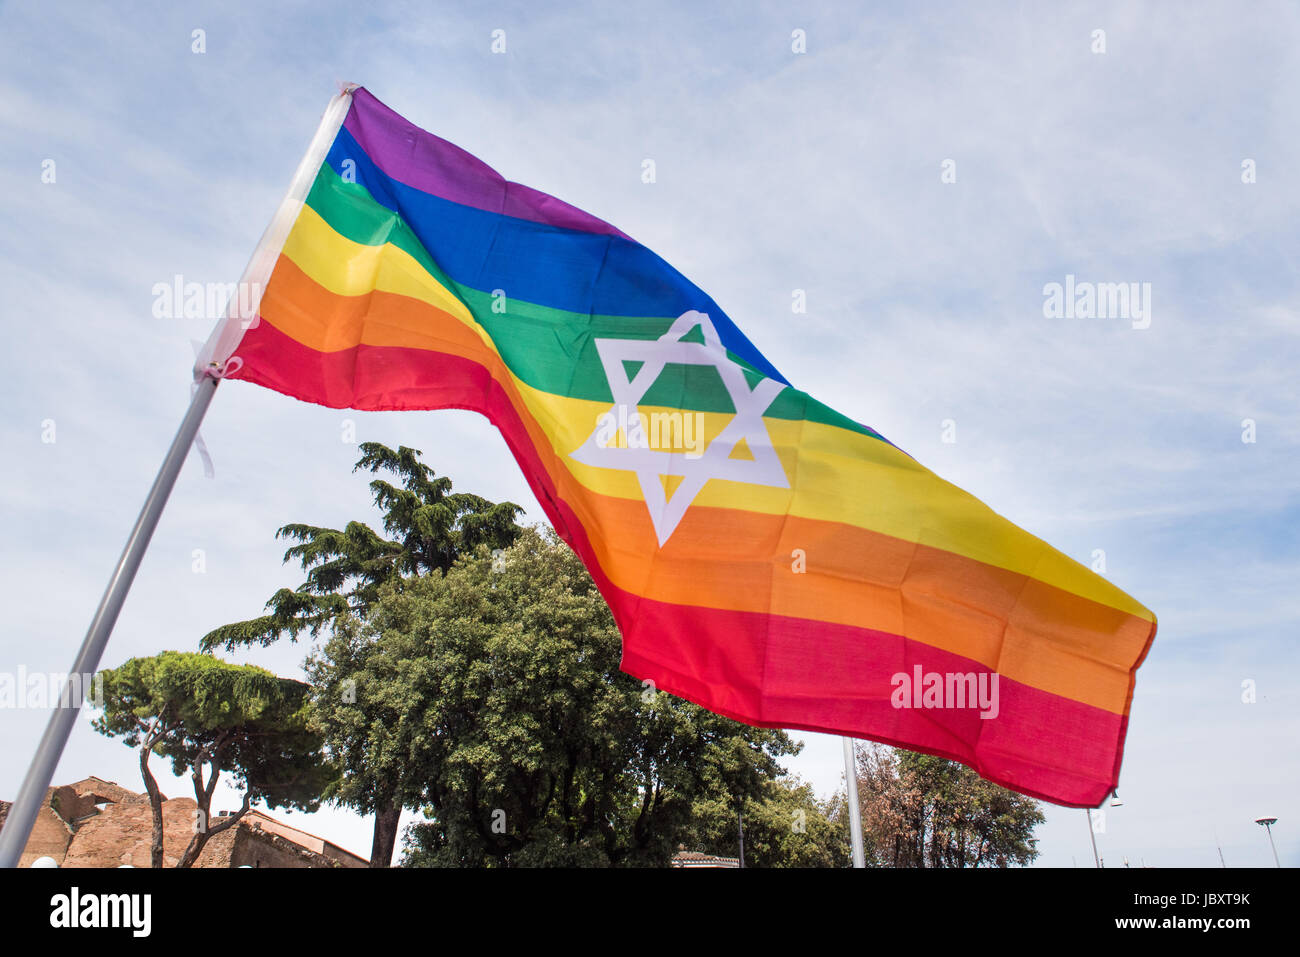 Colorido arco iris de la paz la bandera con la estrella de David, símbolo hexagonal sobre cielo Foto de stock